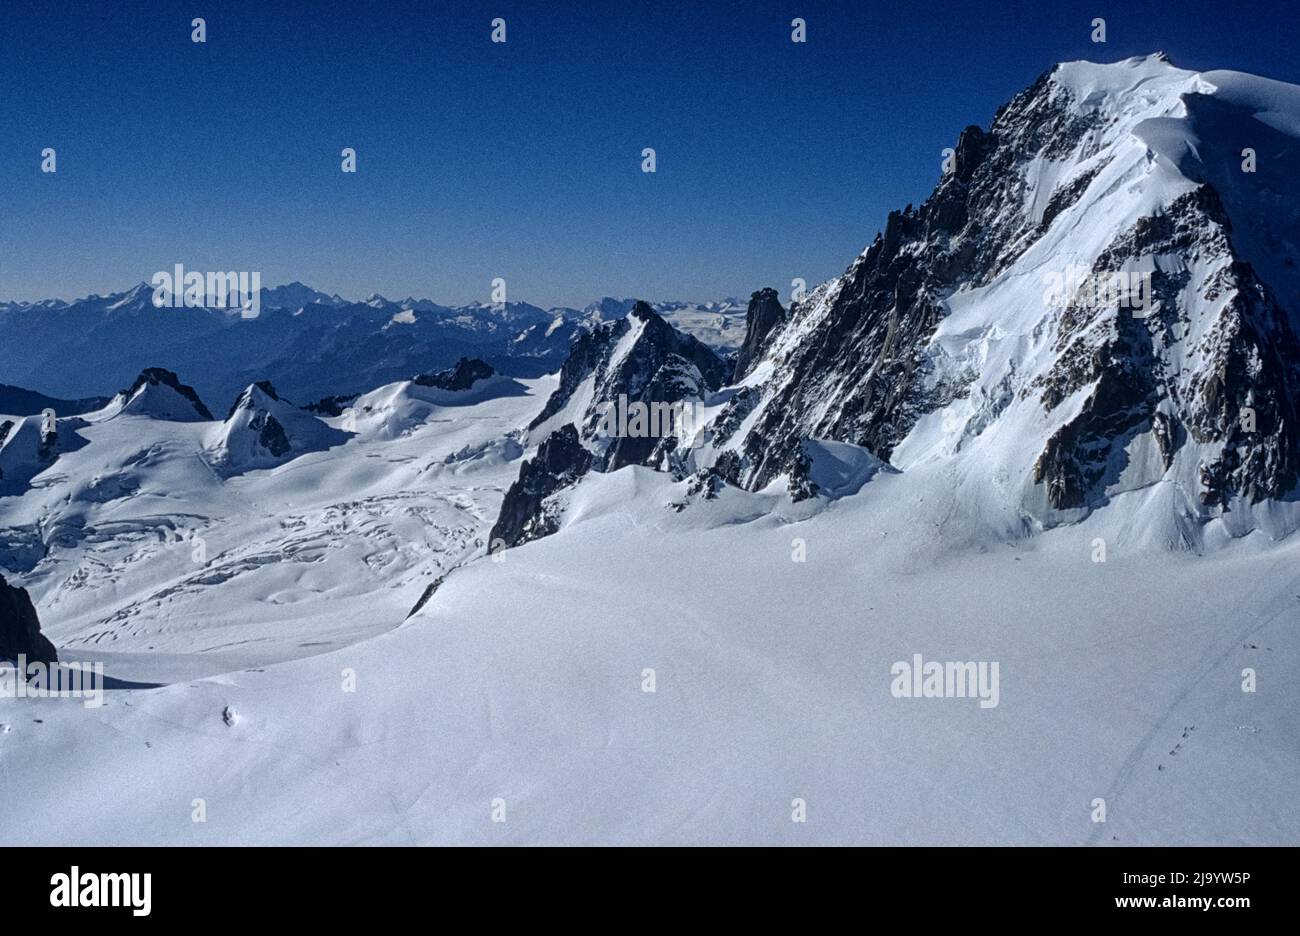 Mont blanc du Tacul, Vallée Blanche, Col du gros Rognon et Glacier du géant vu de l'aiguille du midi, Chamonix-Mont-blanc, France, 1990 Banque D'Images